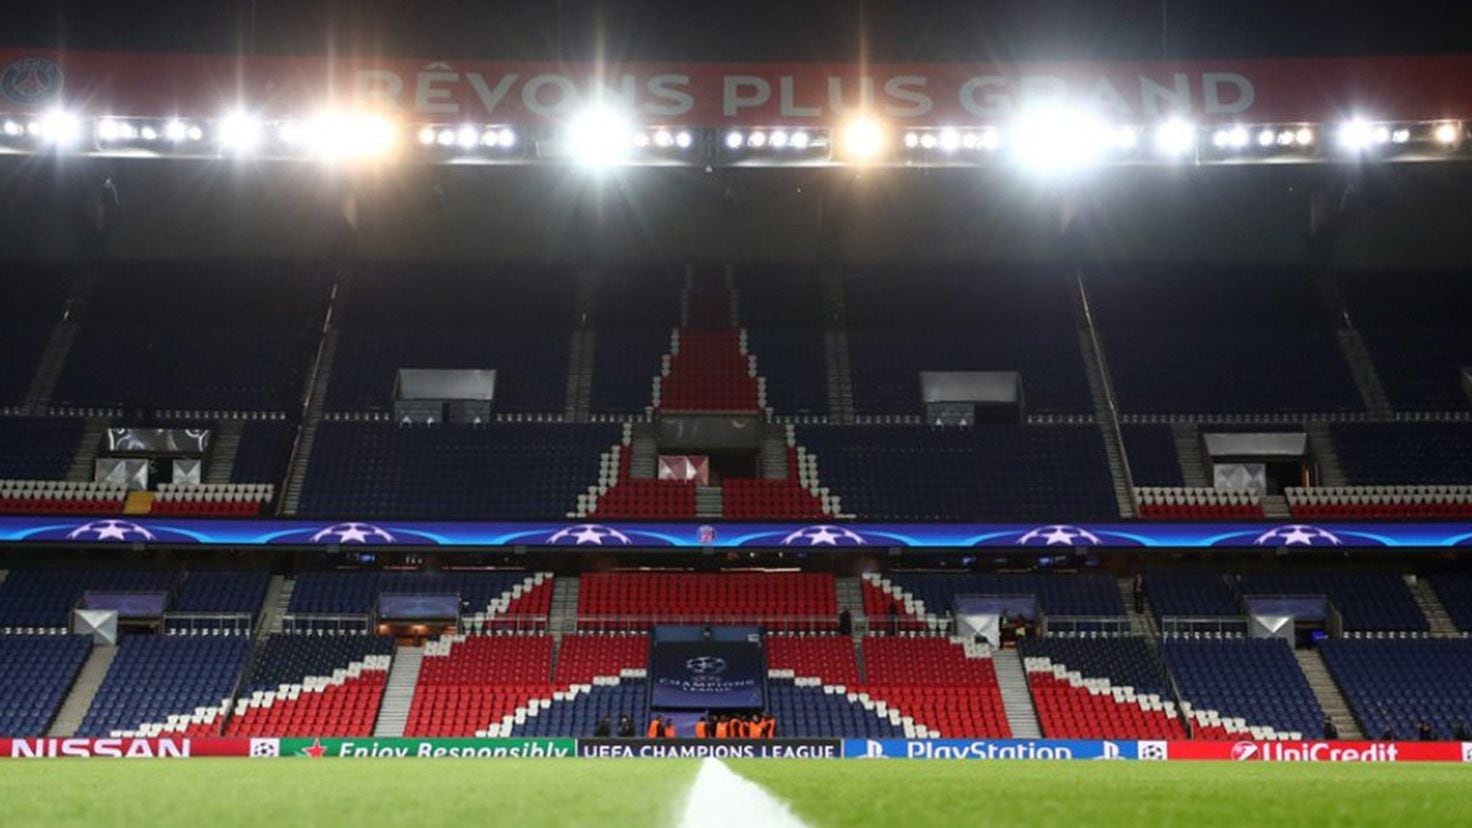 Quattro giocatori del Paris Saint-Germain potrebbero essere puniti per insulti